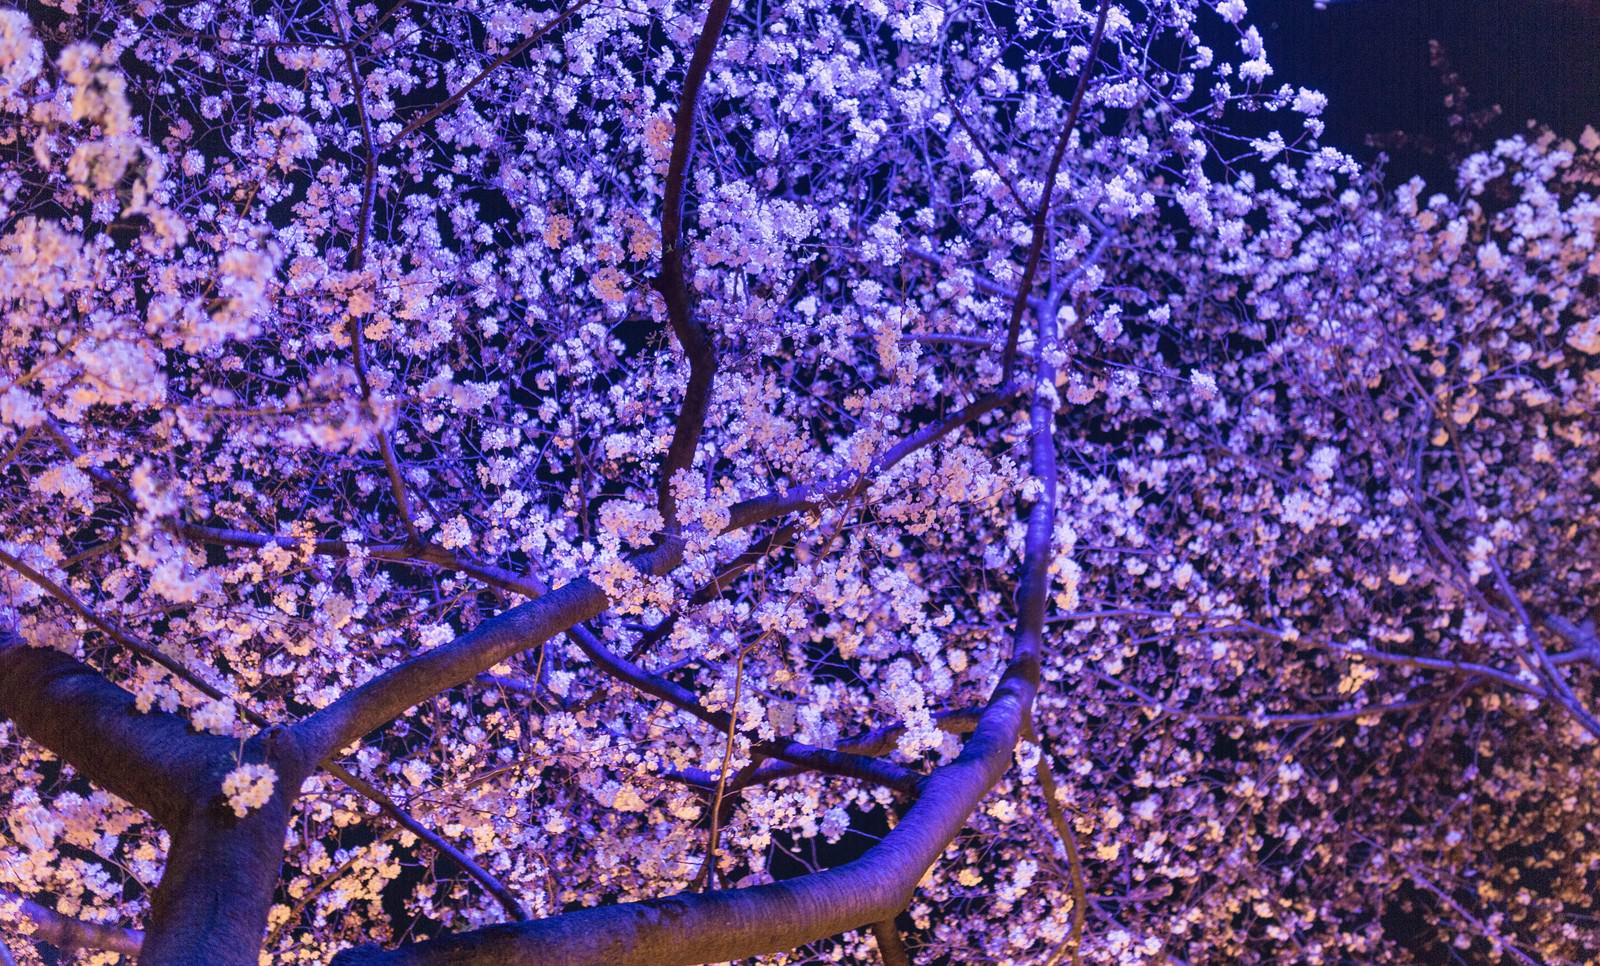 ライトアップした夜桜の無料の写真素材 フリー素材 をダウンロード ぱくたそ